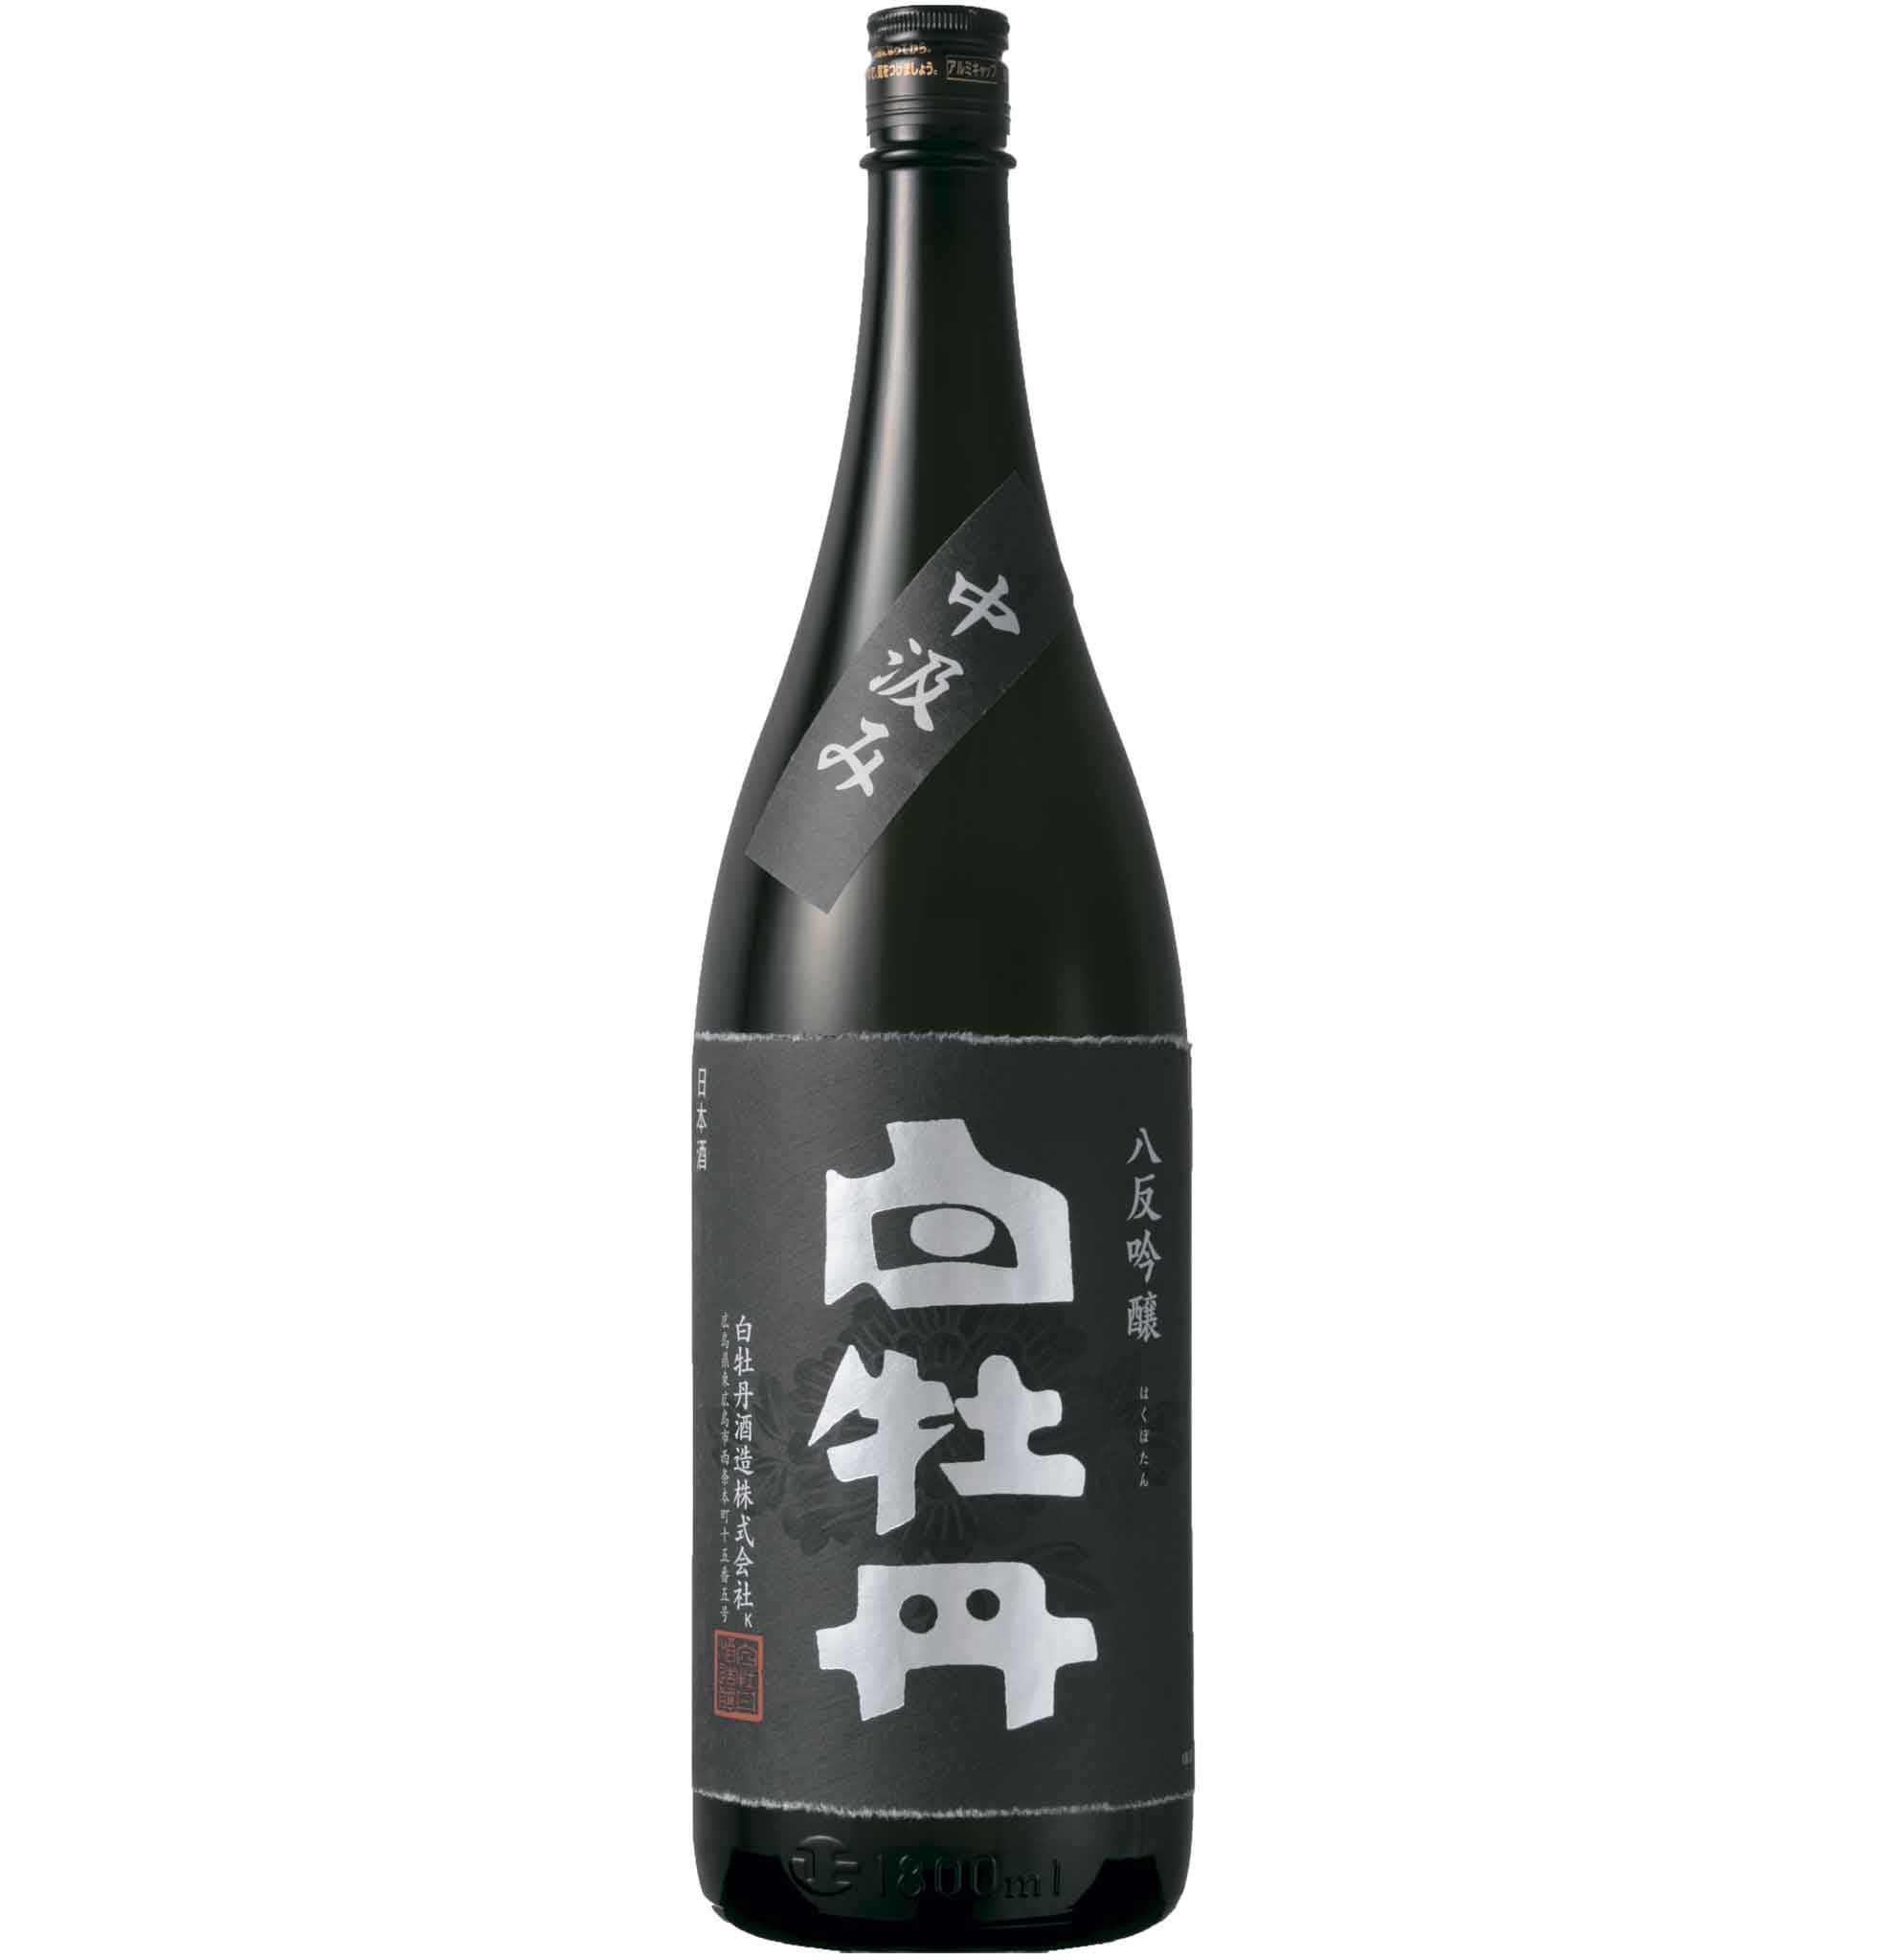 【日本酒 白牡丹】広島八反吟醸酒 中汲み 1.8L瓶詰【流通限定】